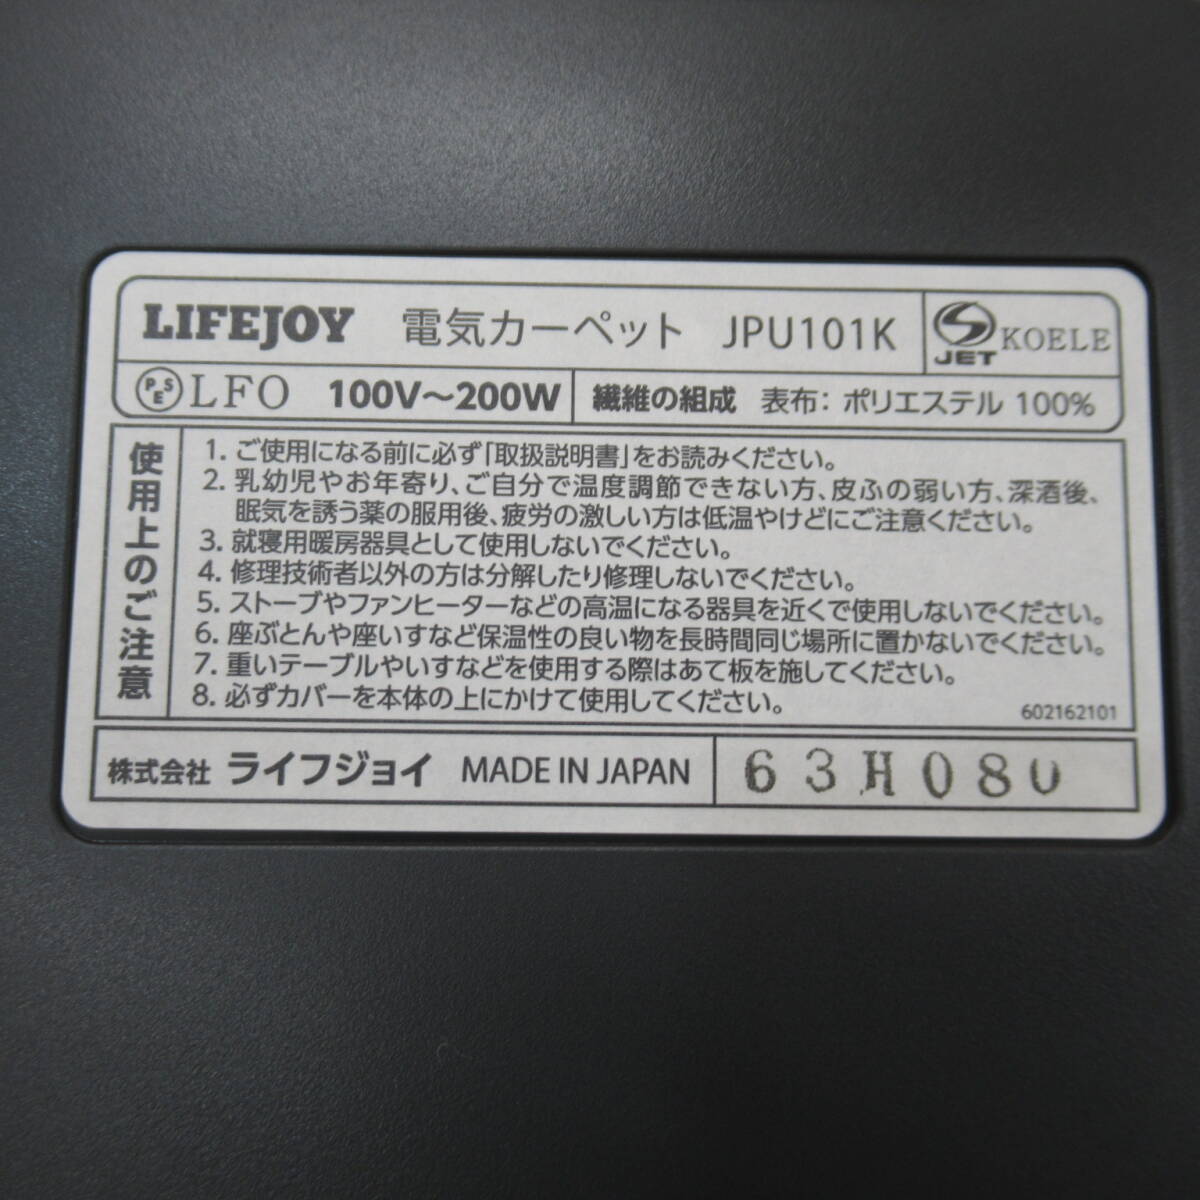 02335PS24[ не использовался ] жизнь Joy сделано в Японии электроковер 1 татами черный 88cm×176cm compact место хранения JPU101K